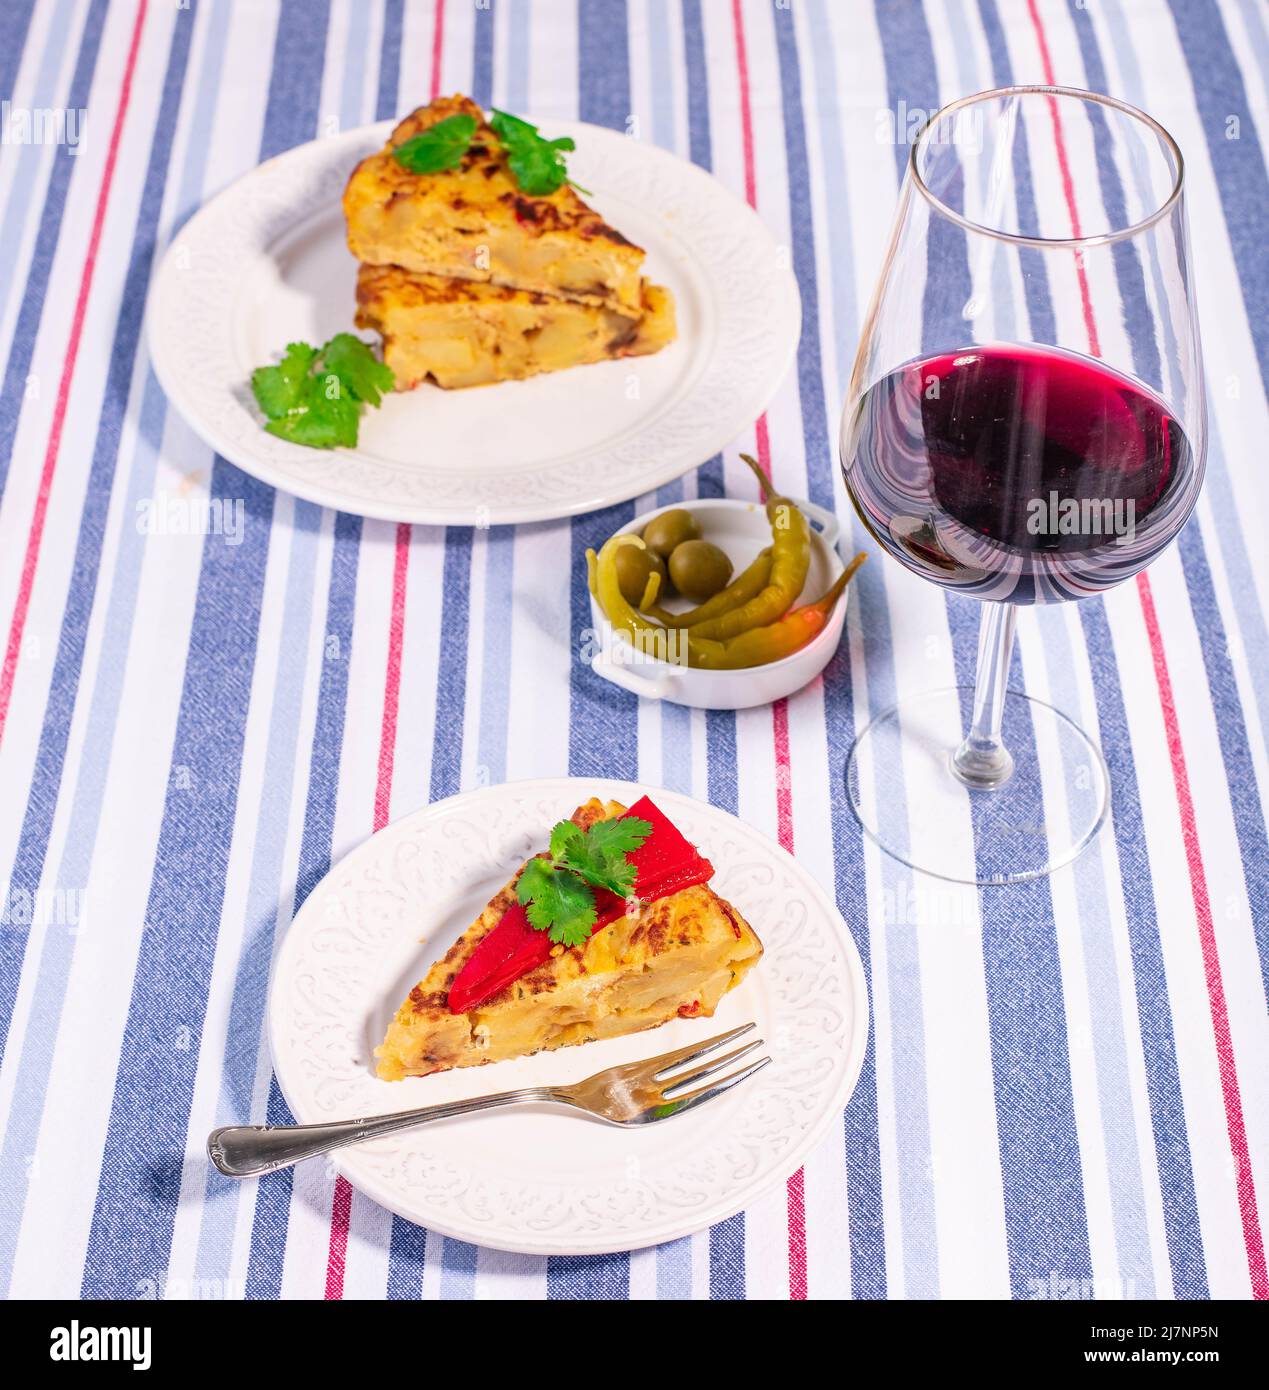 Tortilla patata tradizionale spagnola con peperoncino piquillo rosso, olive e guindilla piccante e un bicchiere di vino rosso. Foto Stock